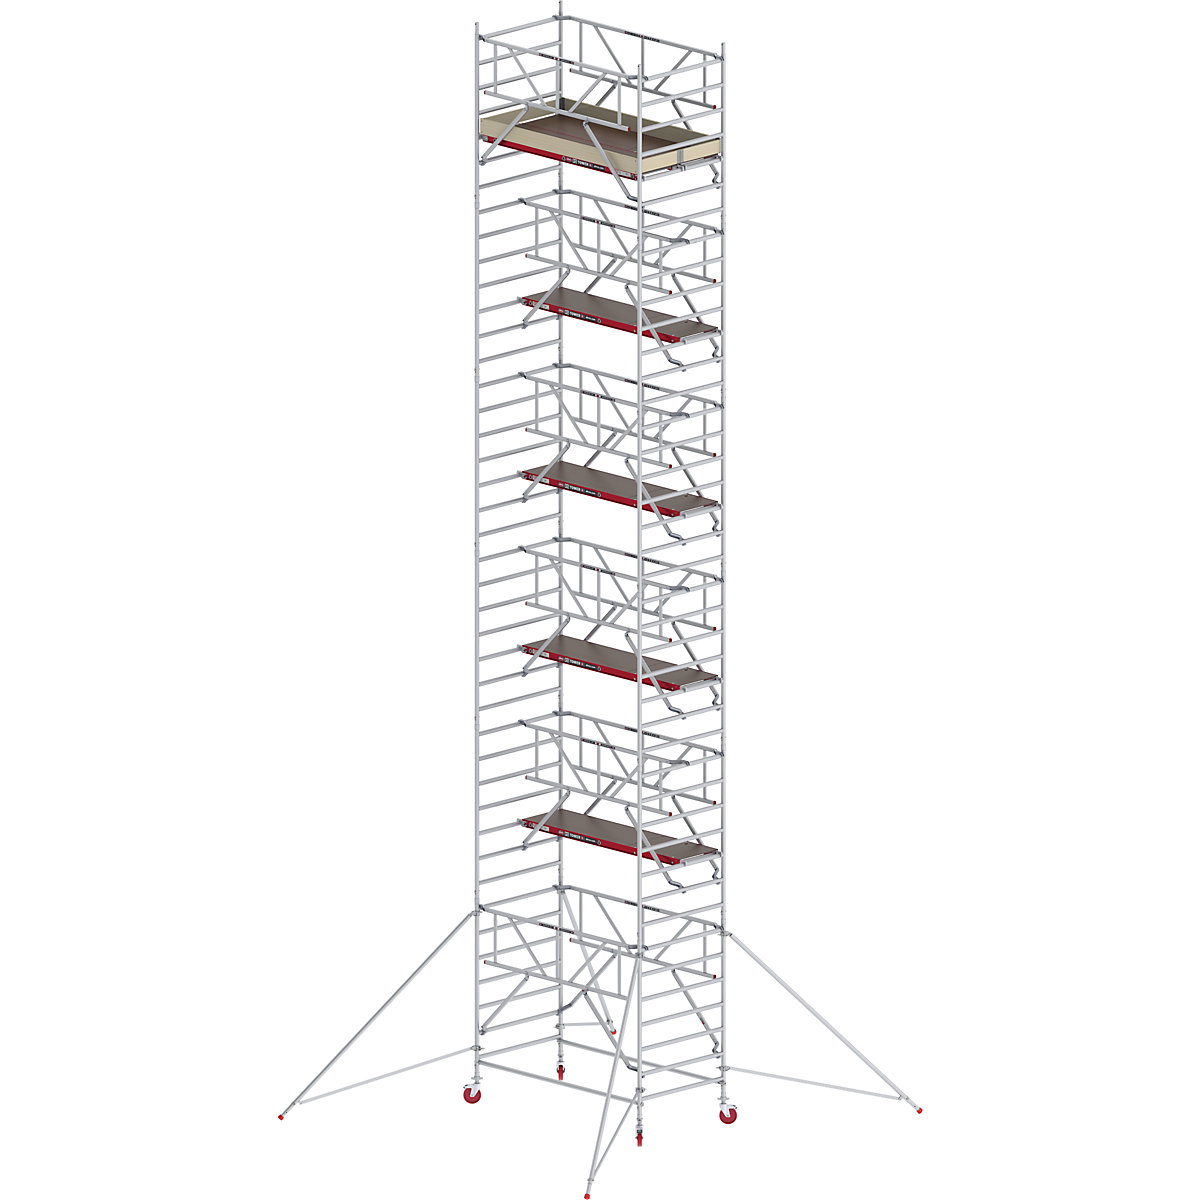 Trabattello mobile RS TOWER 42 largo con Safe-Quick® – Altrex, piattaforma in legno, lunghezza 2,45 m, altezza di lavoro 13,2 m-10